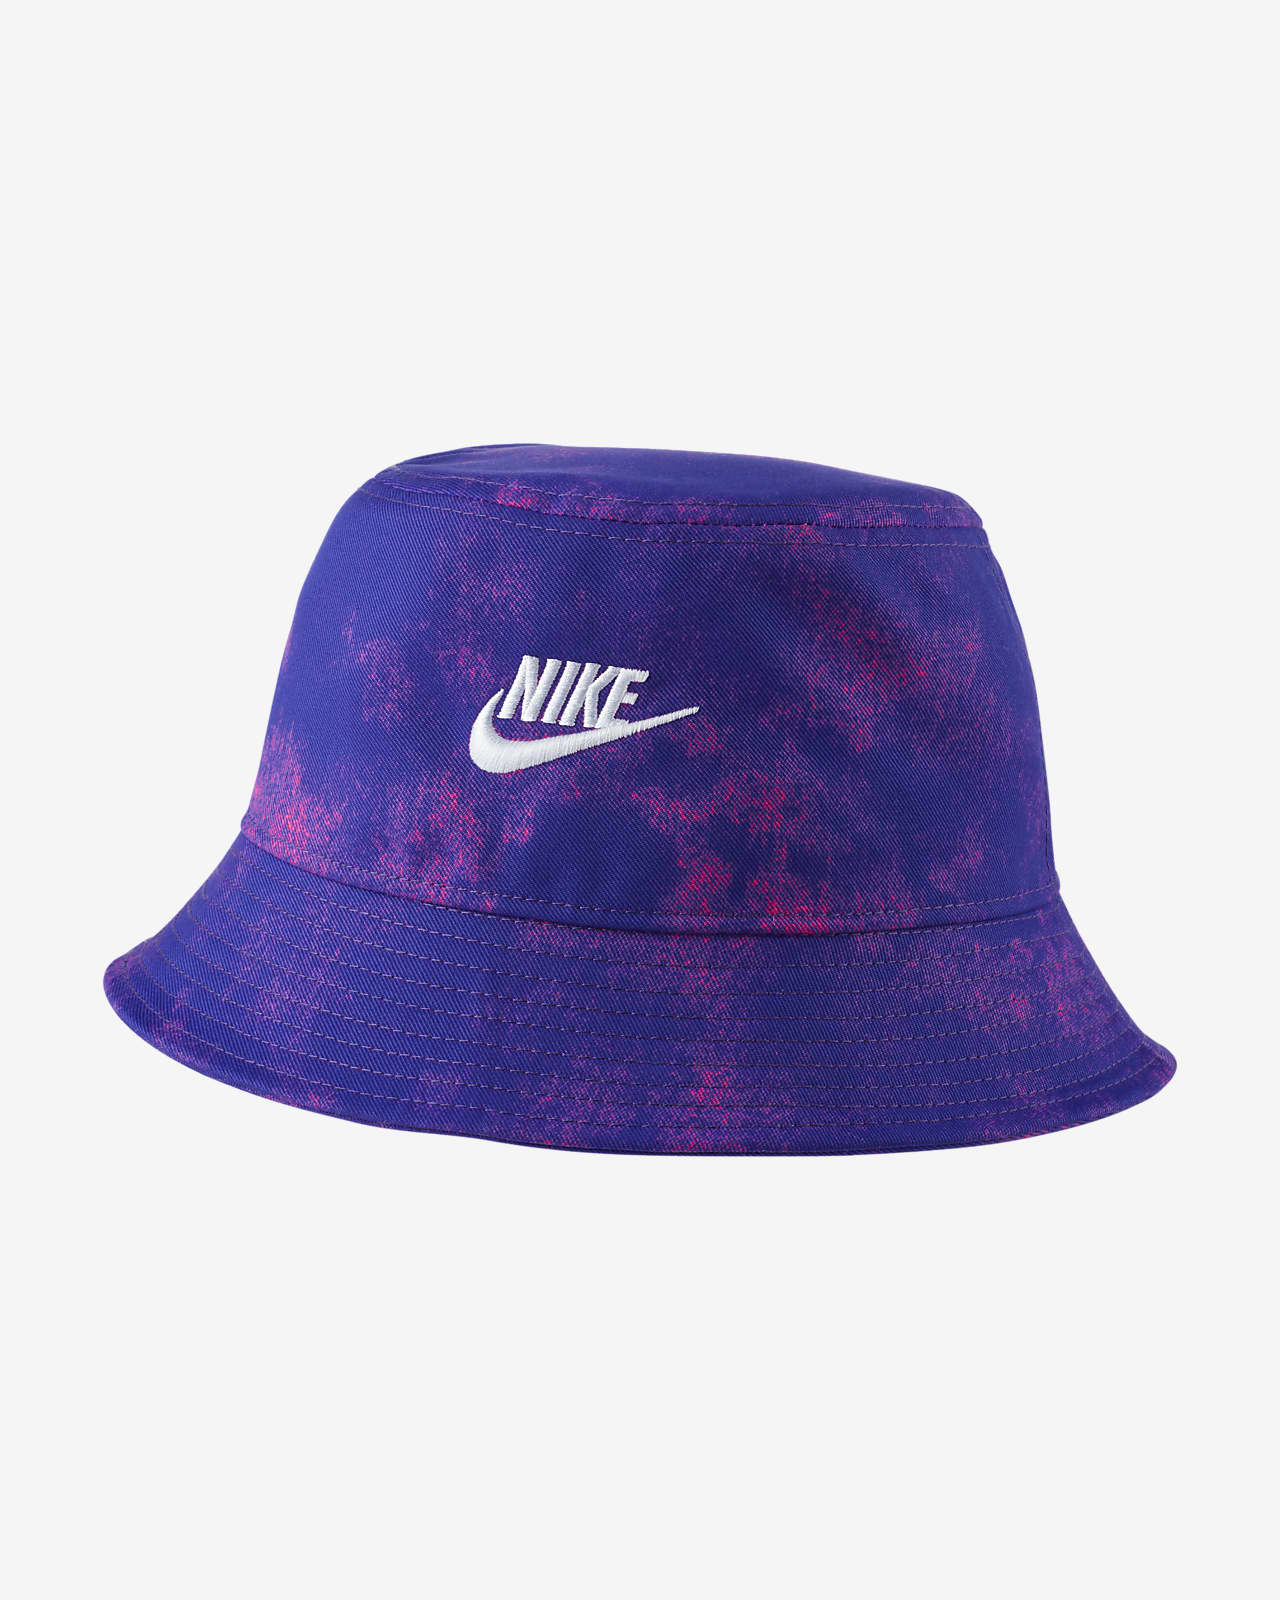 nike bucket hat purple